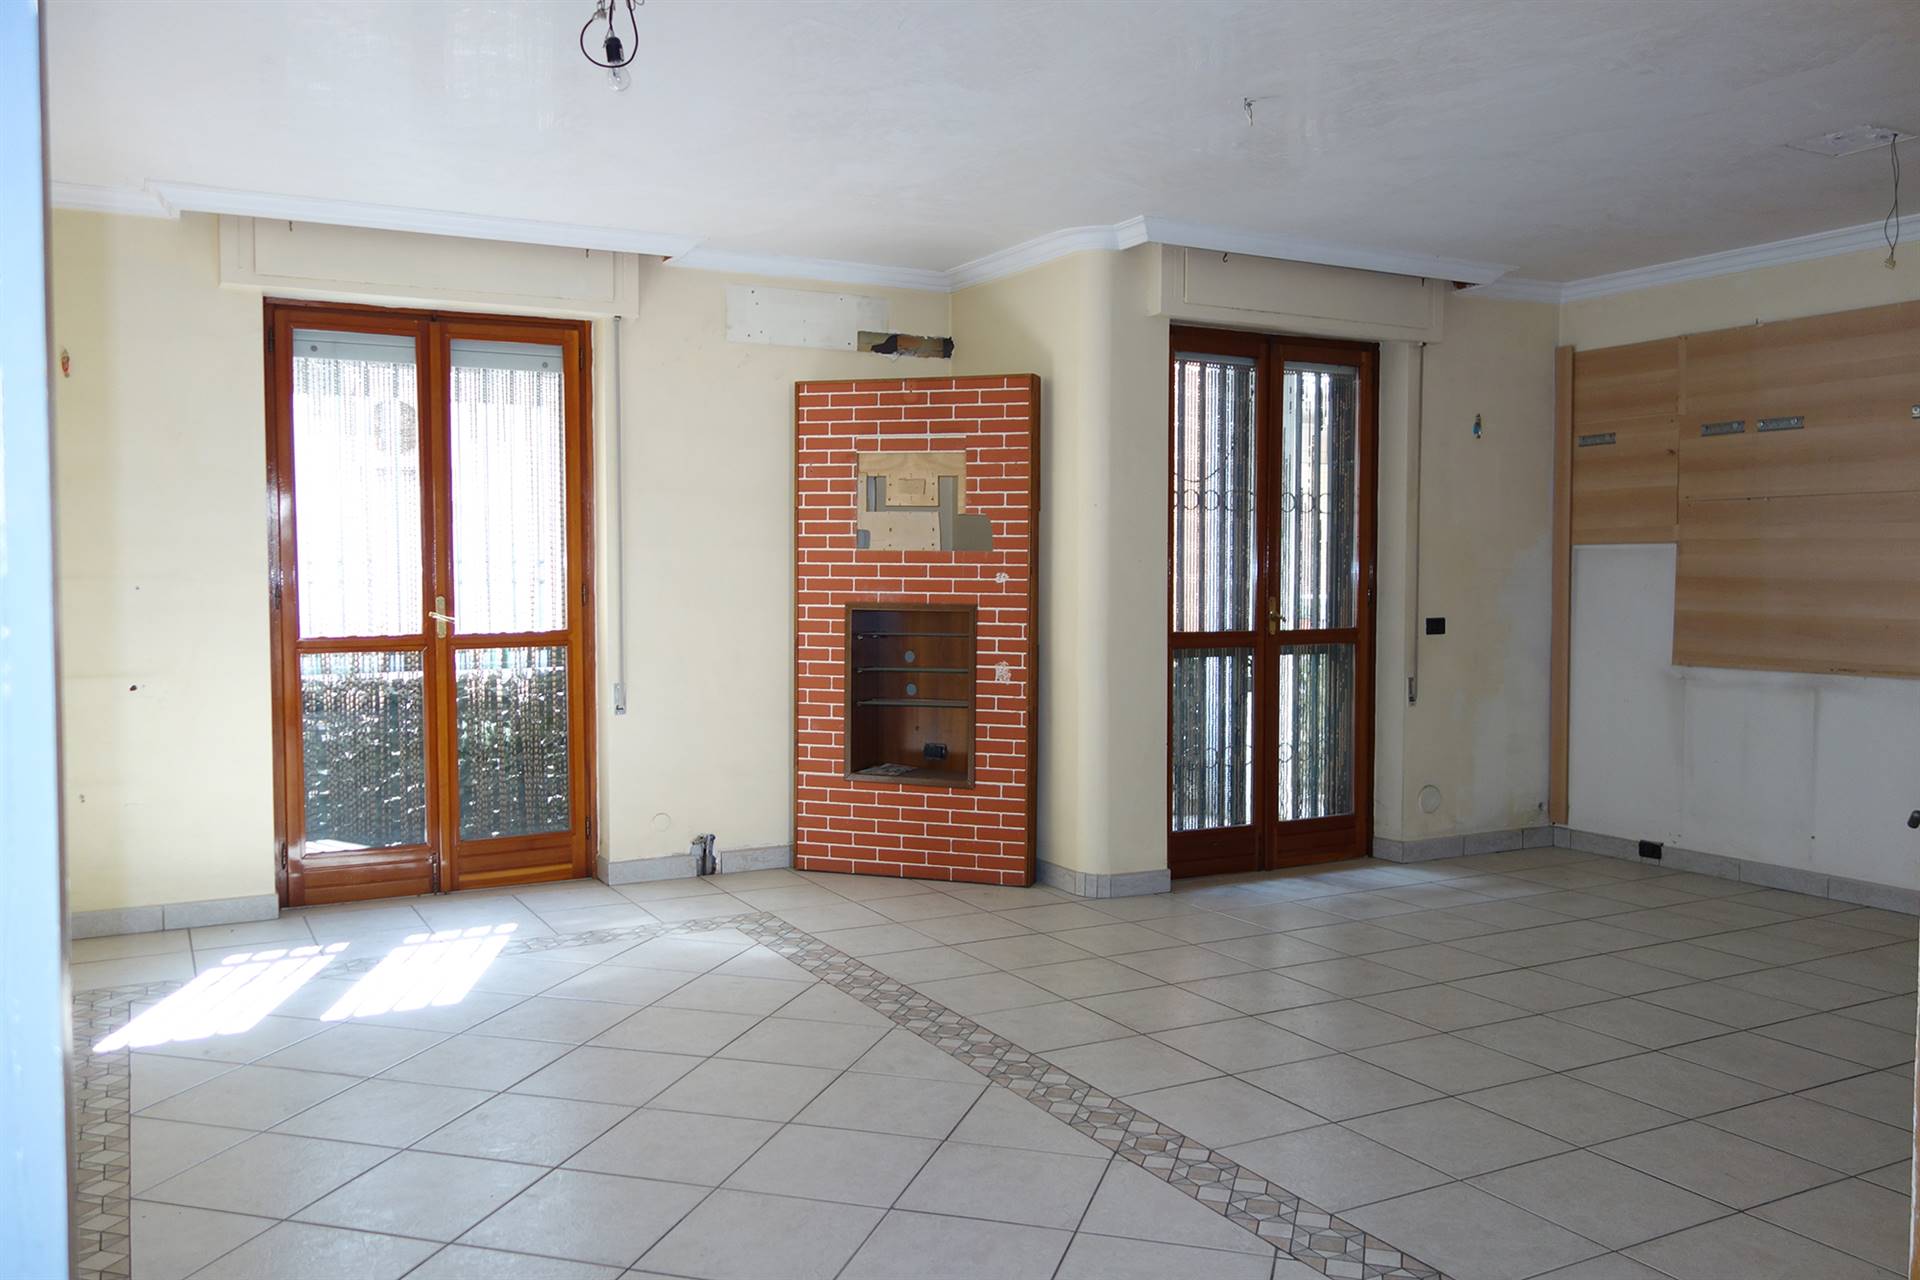 Appartamento in vendita a San Severo, 3 locali, prezzo € 135.000 | PortaleAgenzieImmobiliari.it